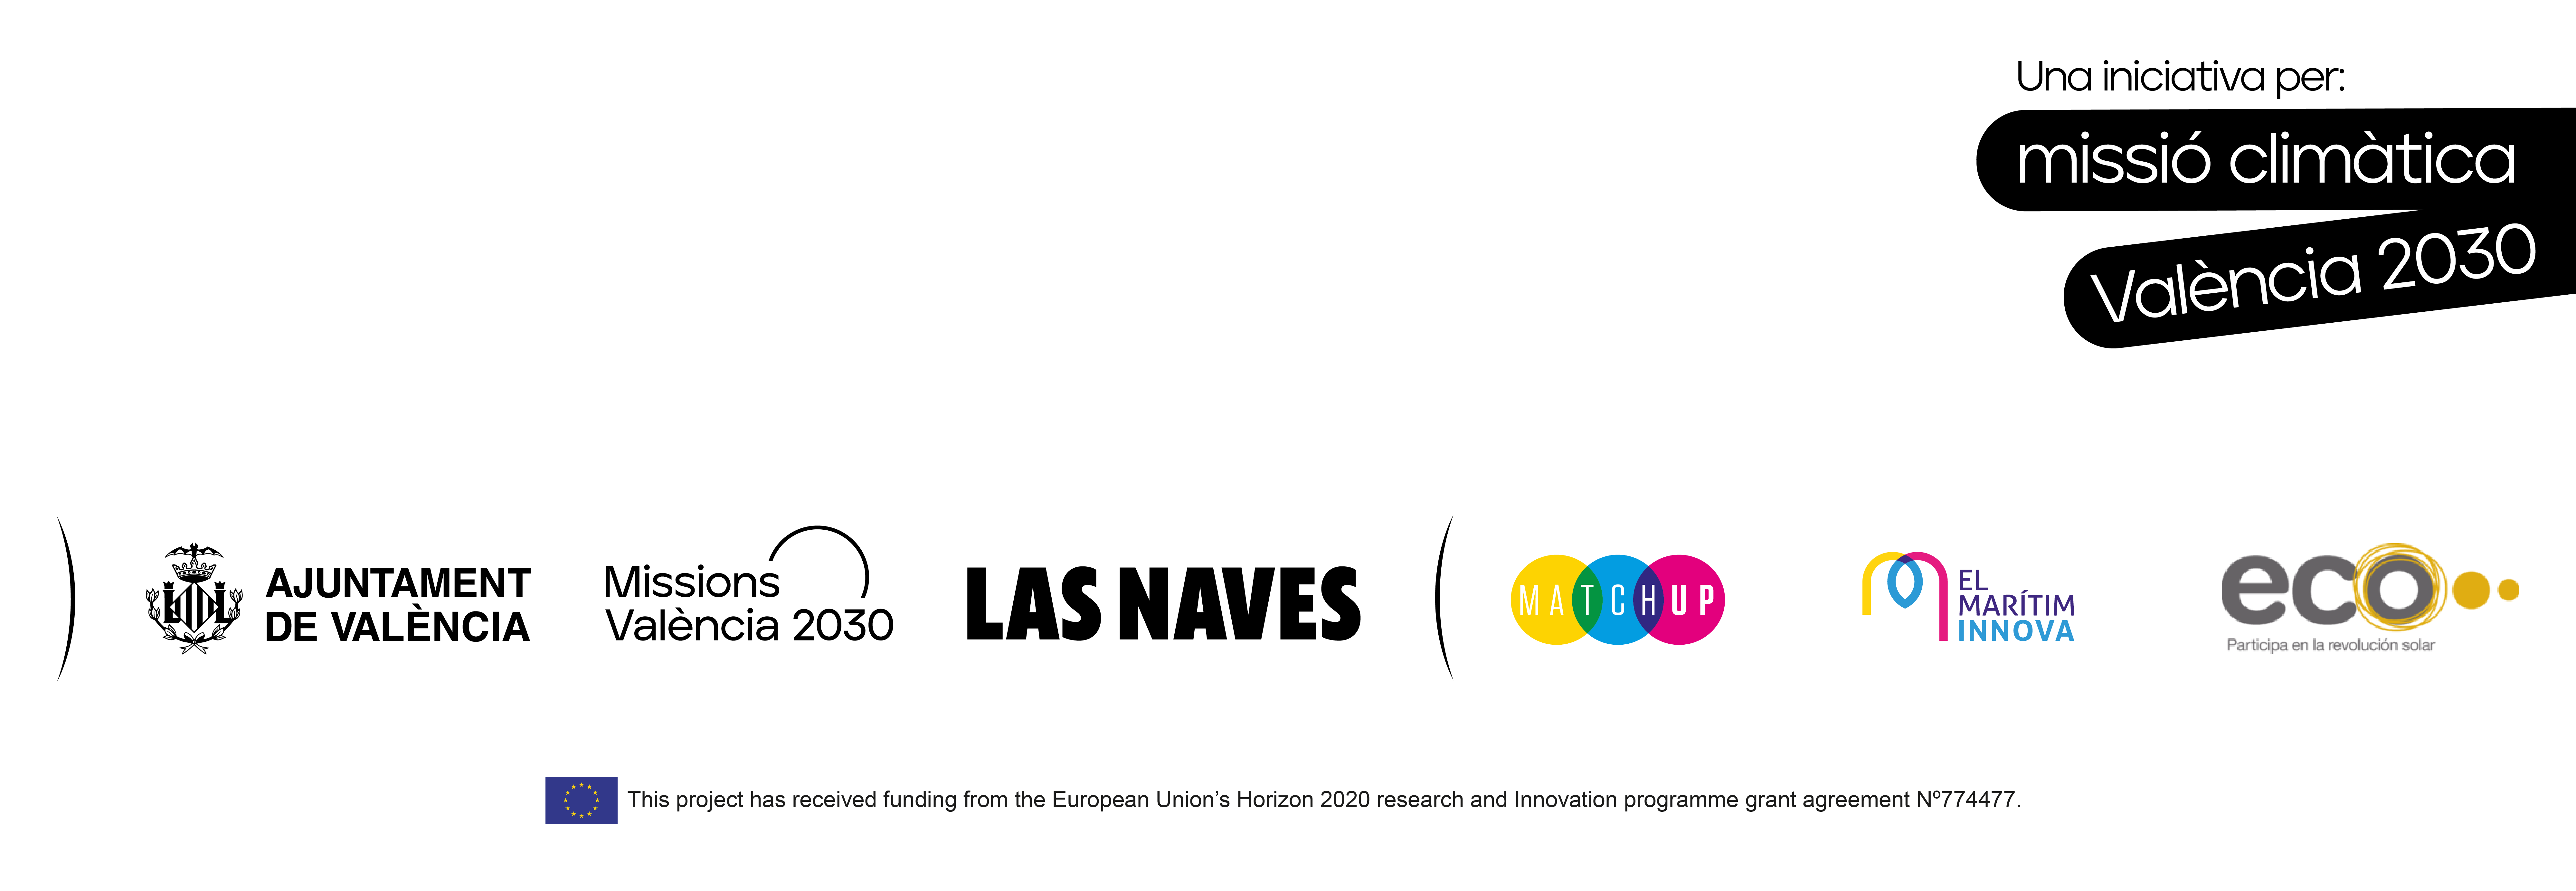 Logotips institucionals de la página web en valencià